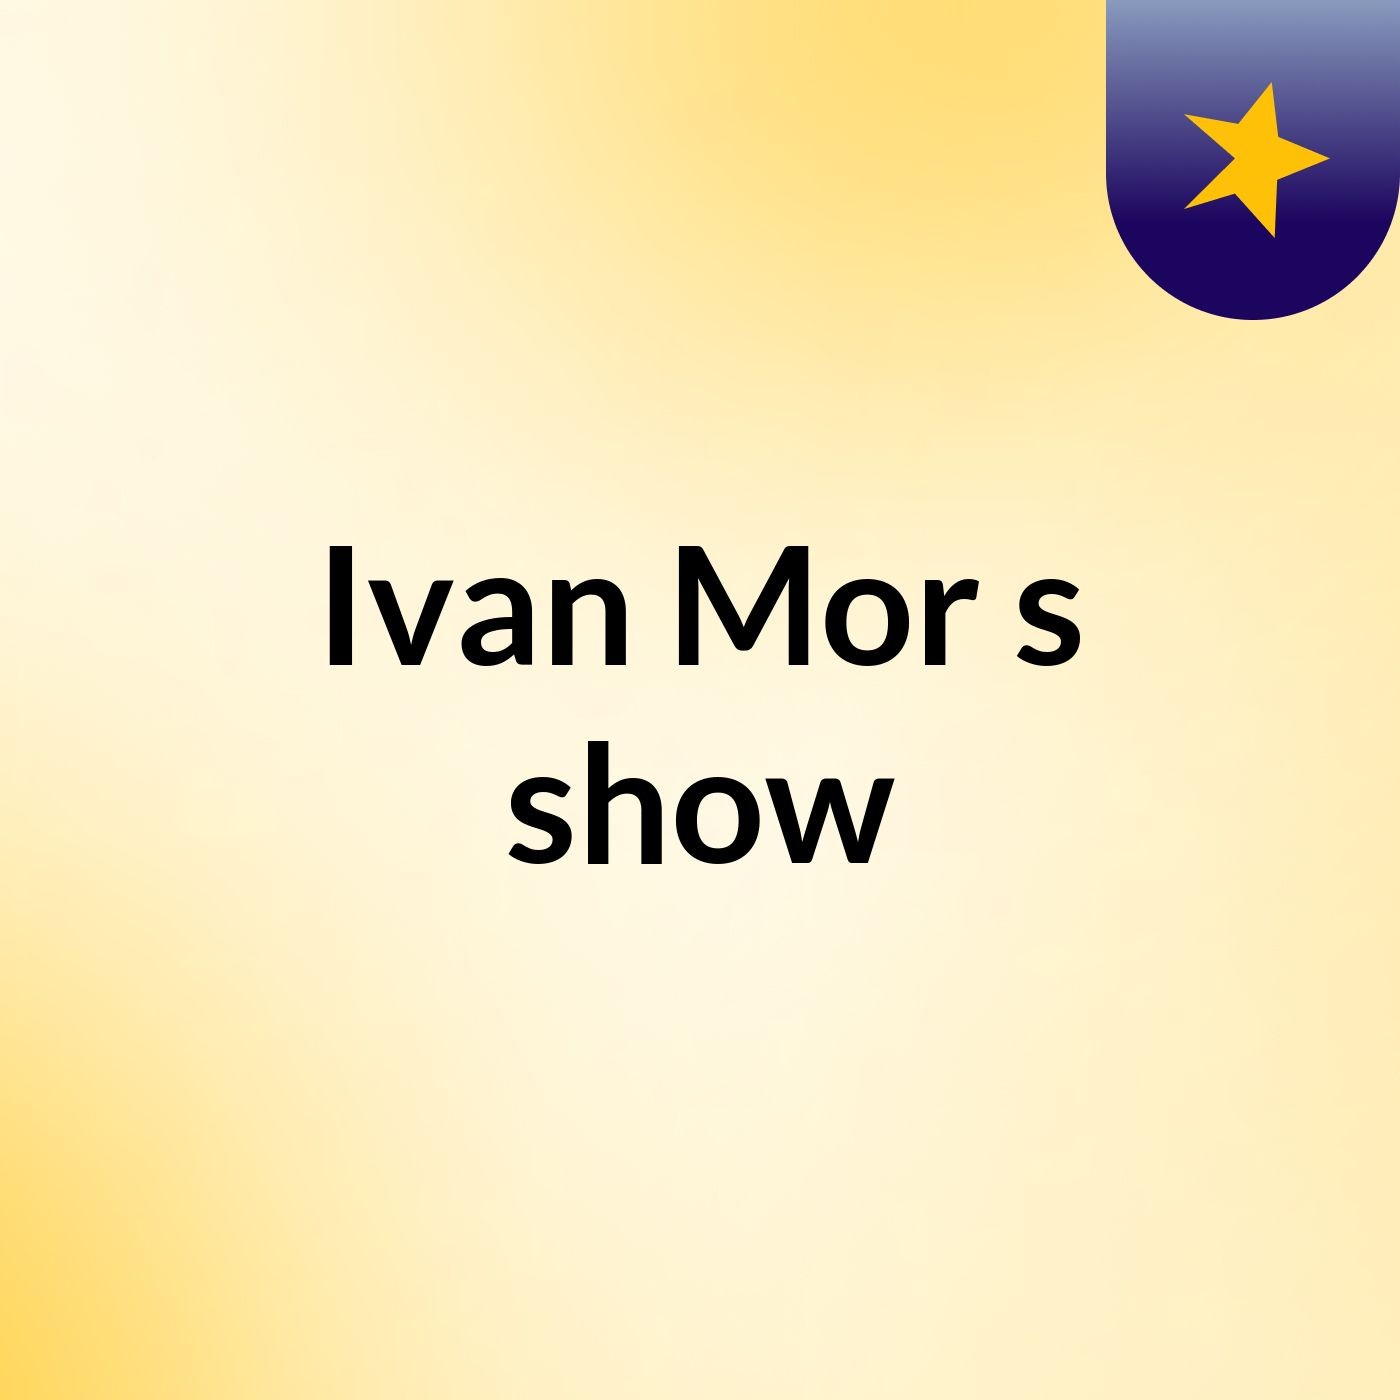 Ivan Mor's show